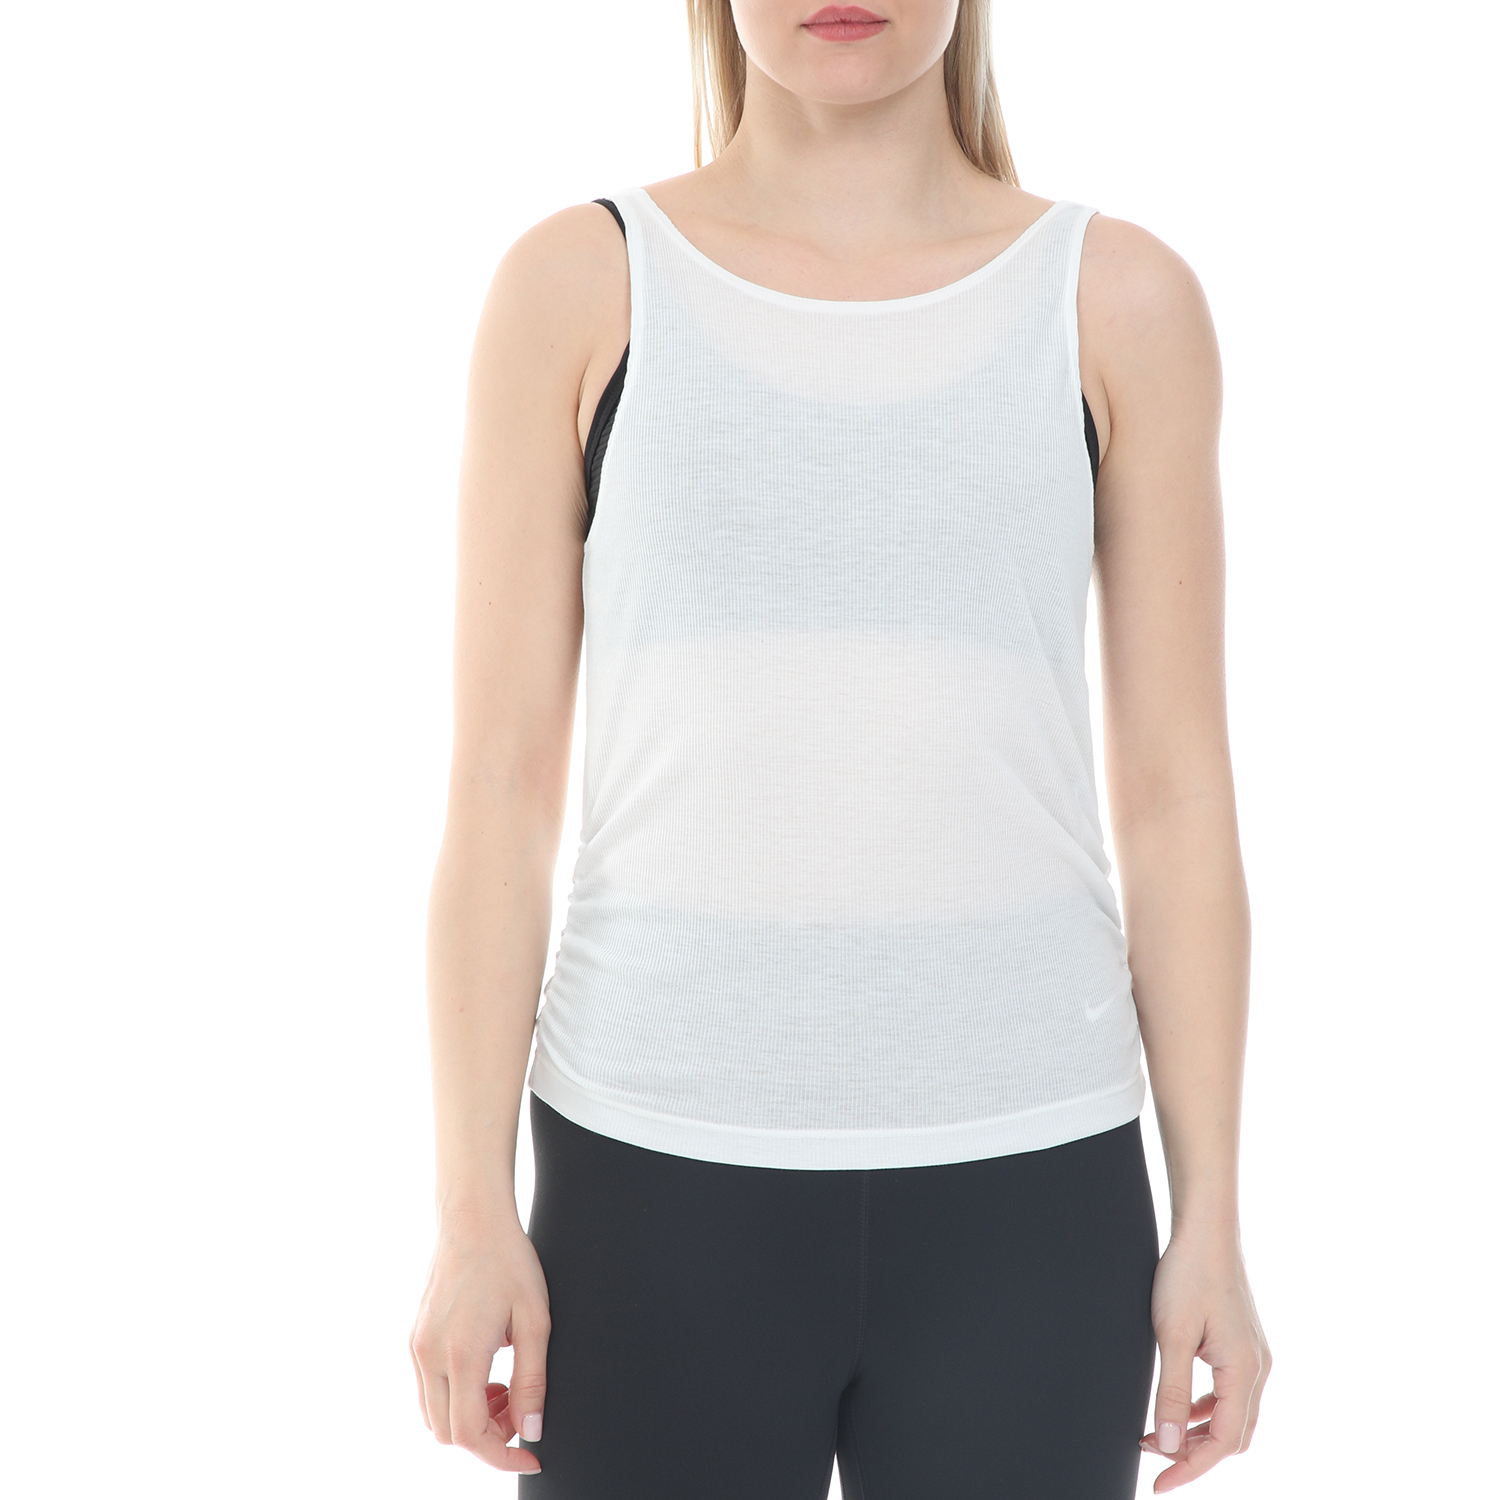 Γυναικεία/Ρούχα/Αθλητικά/T-shirt-Τοπ NIKE - Γυναικείο top NIKE YOGA RUCHE TANK λευκό